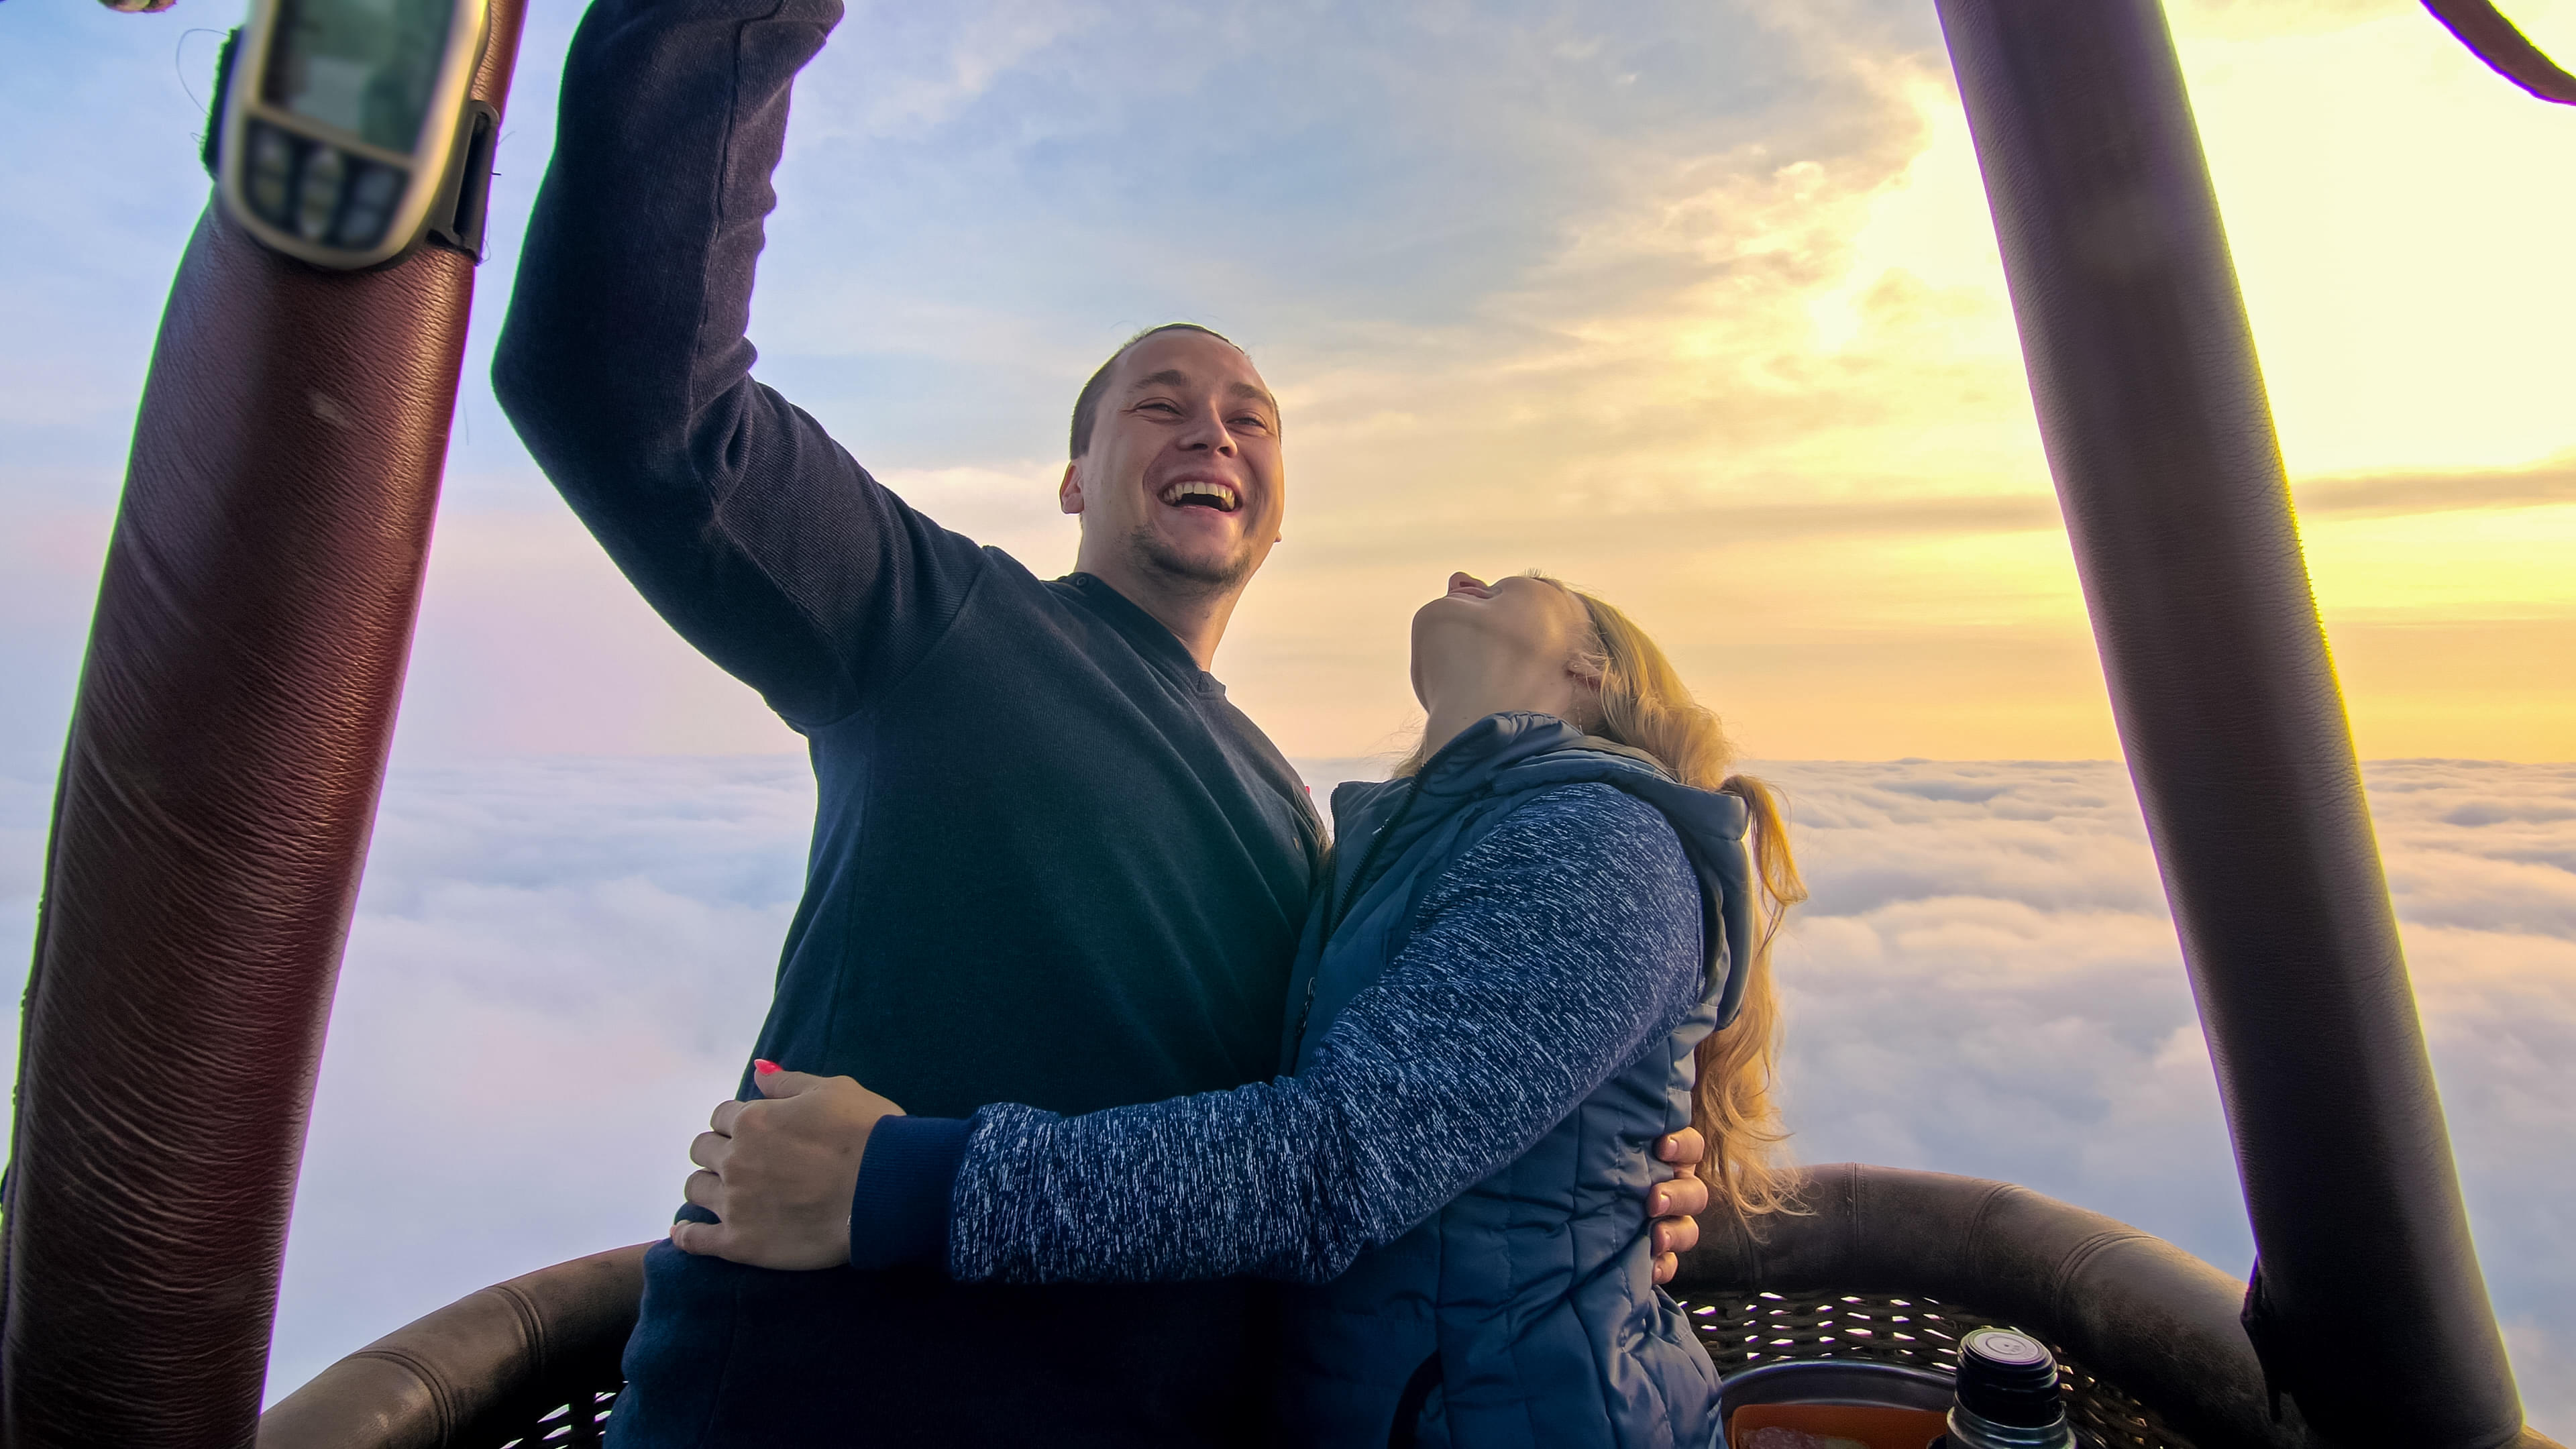 Couples Enjoying Hot Air Balloon Ride In Dubai